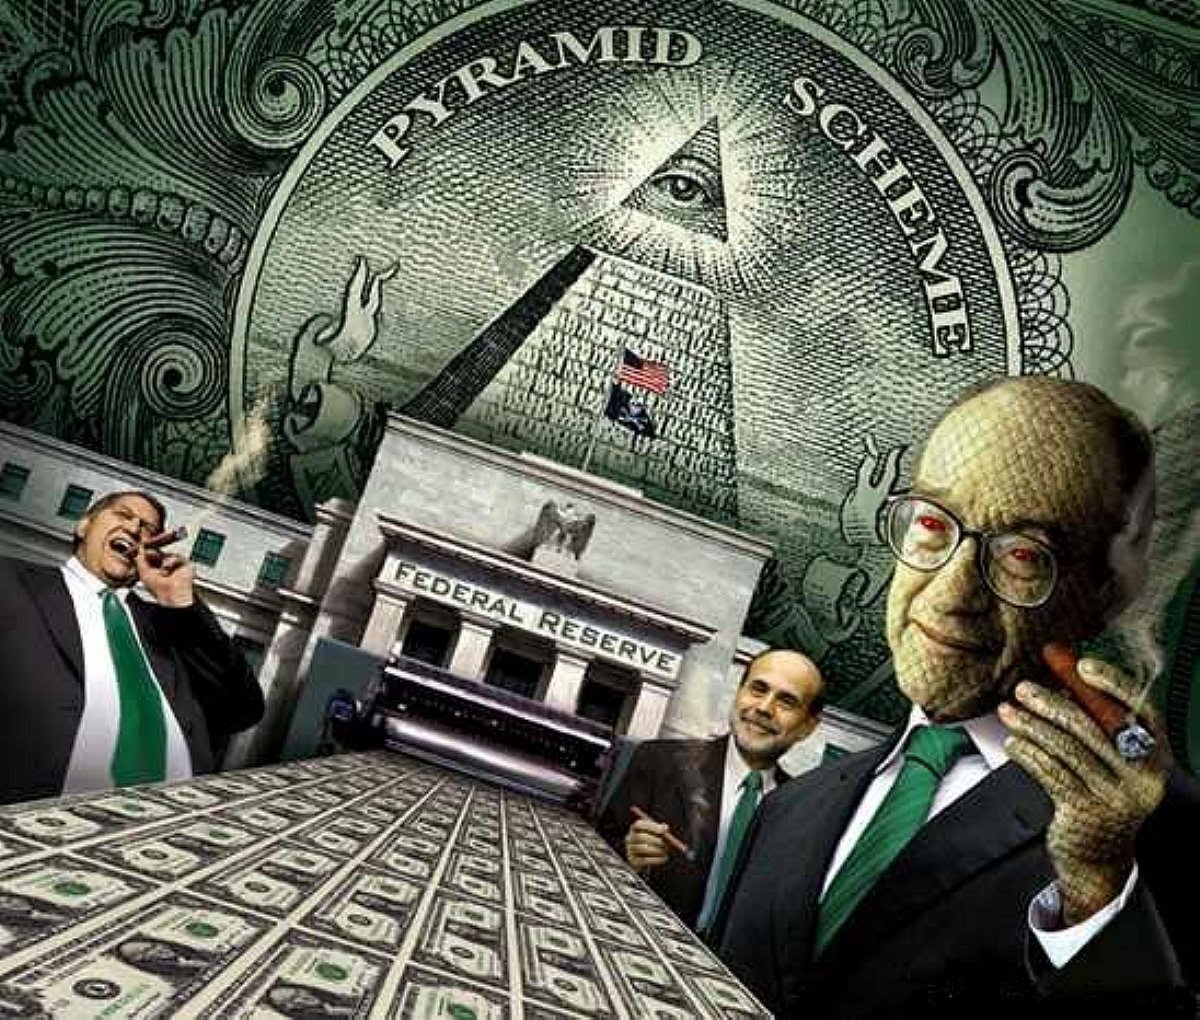 Fed pyramid scheme